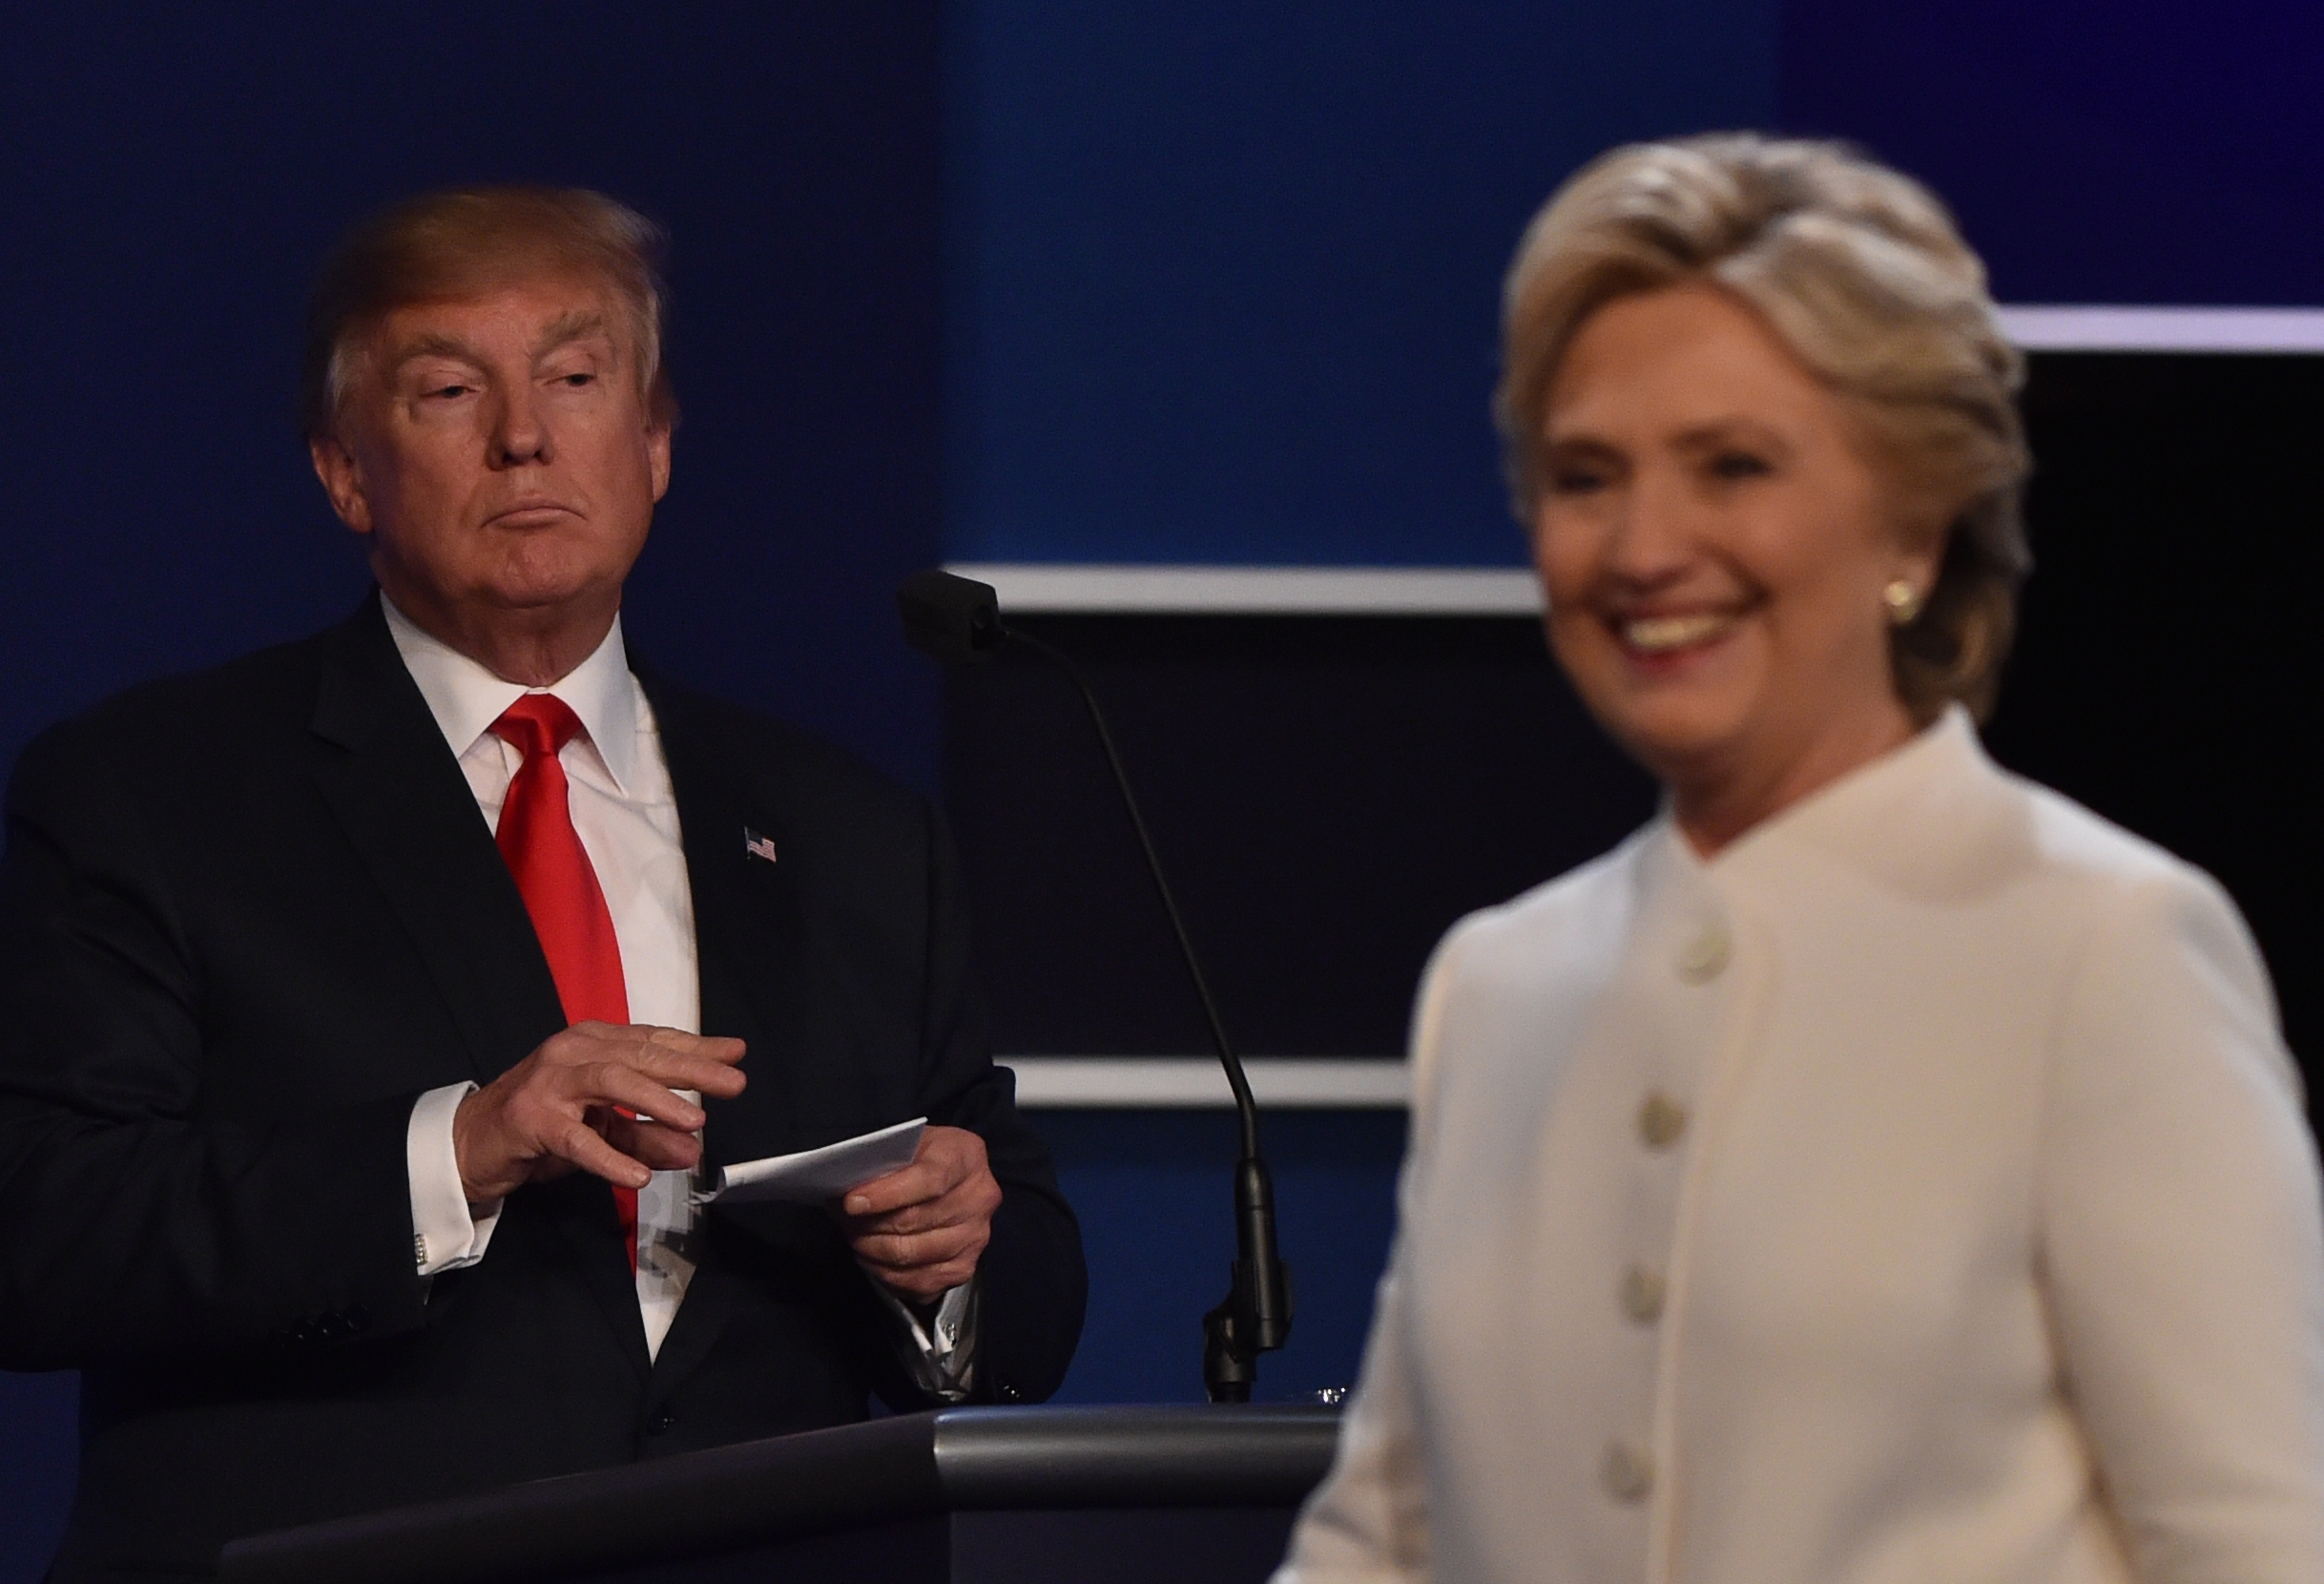  EEUU celebra elecciones tras una virulenta campaña entre Trump y Clinton